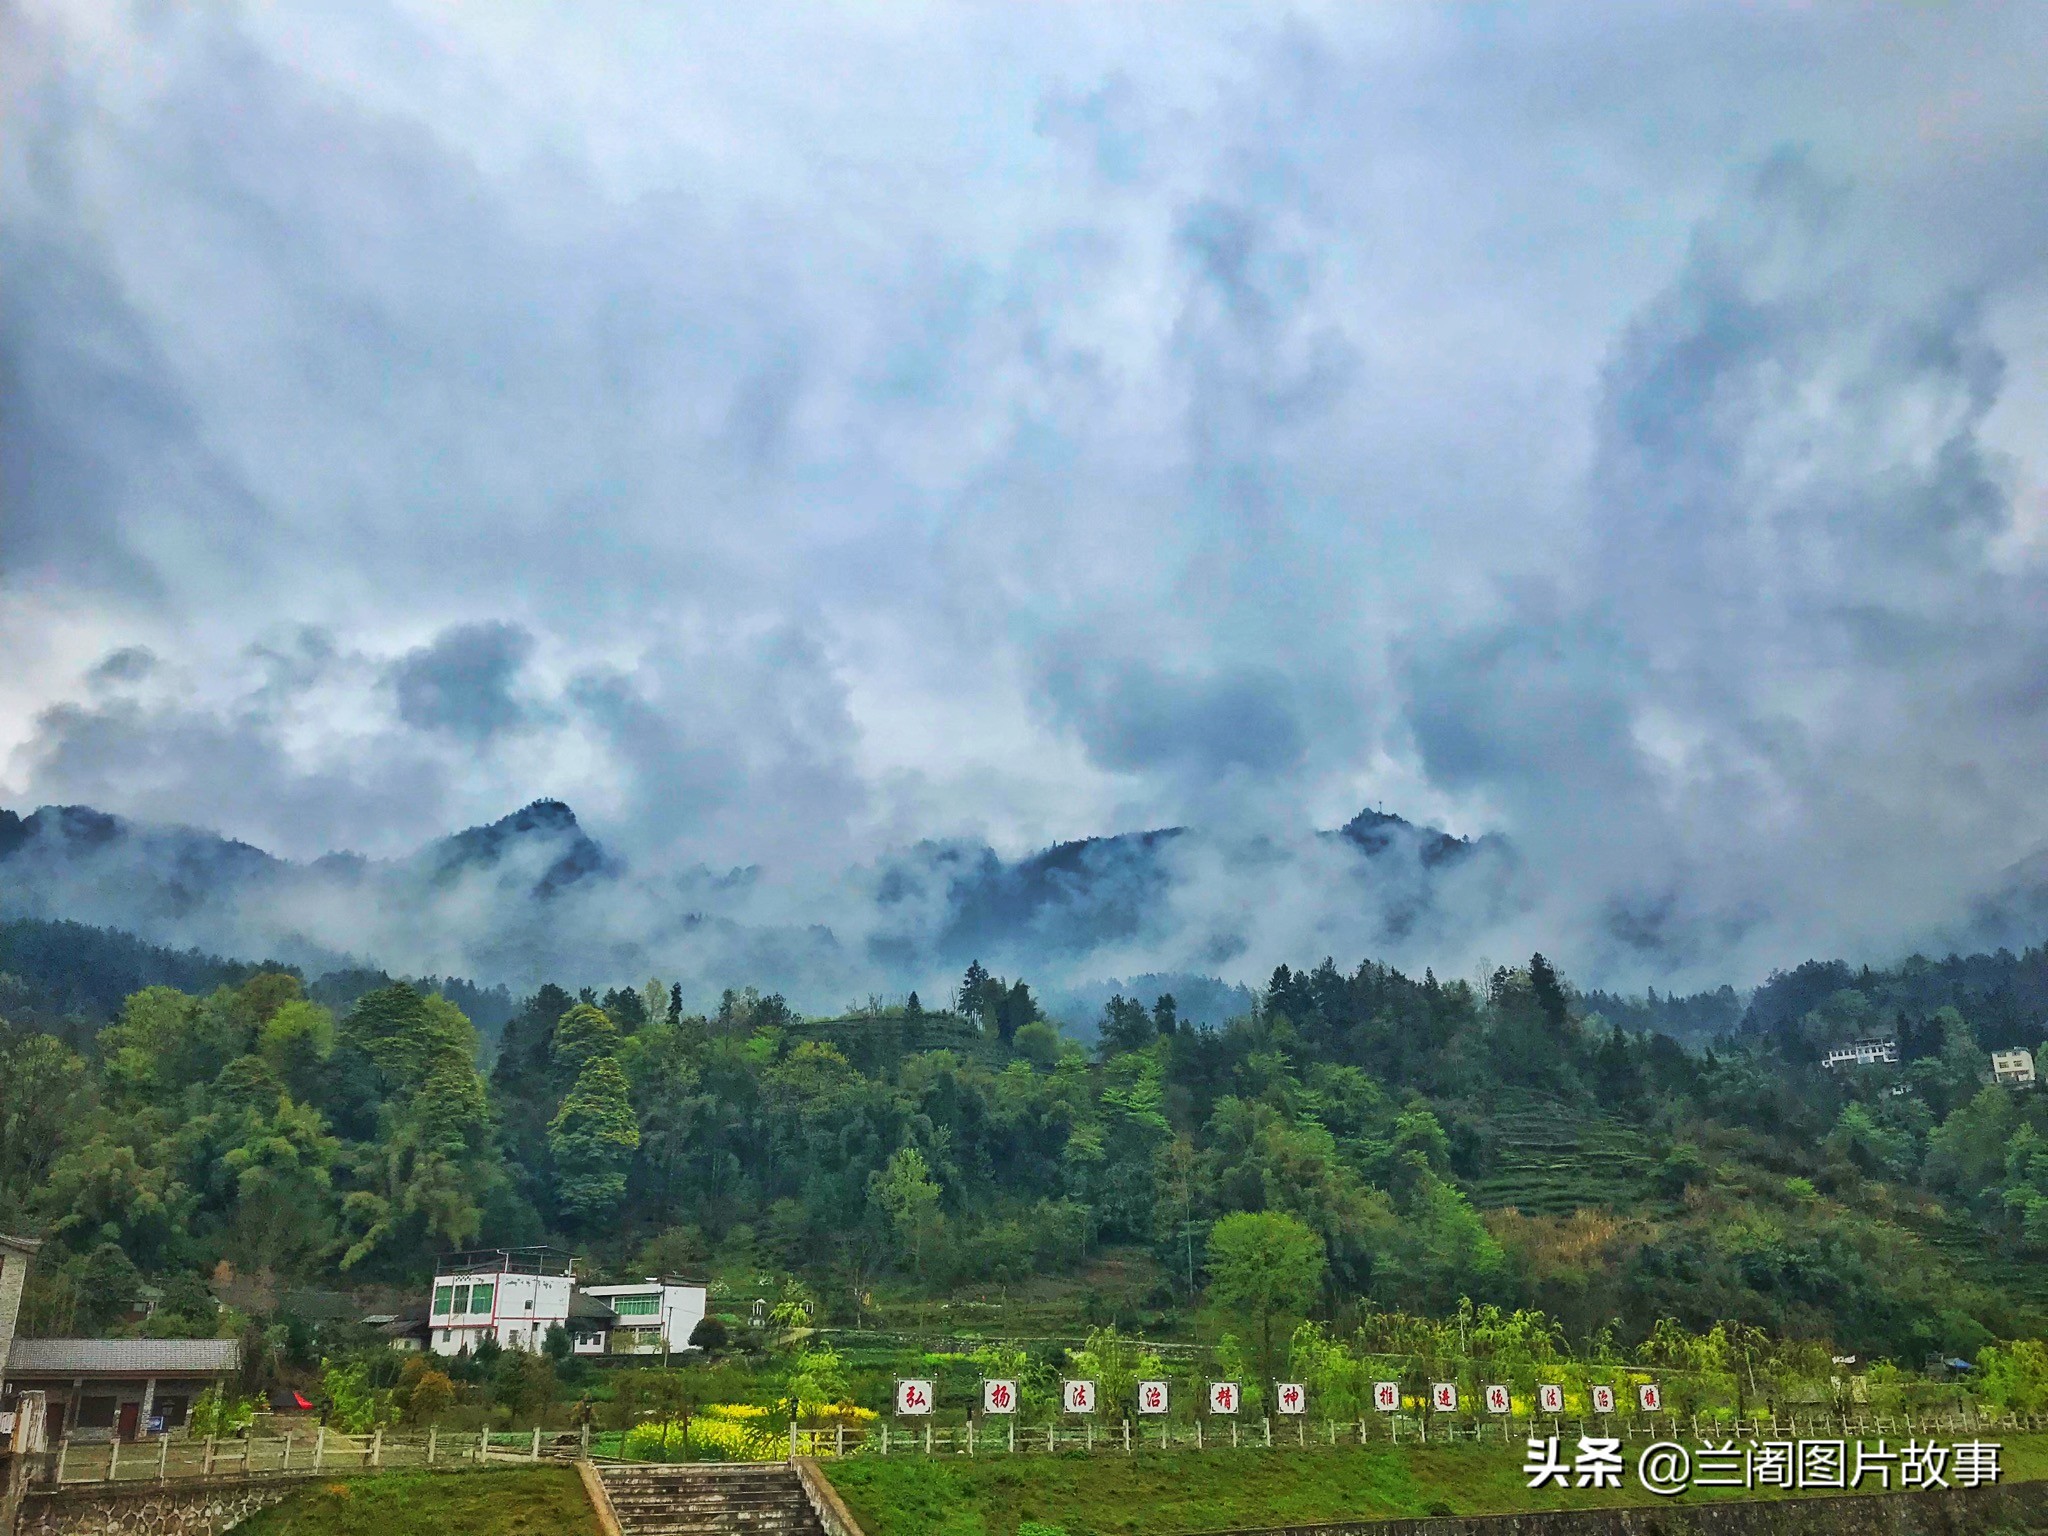 从高空俯瞰利川忠路镇的万亩茶园,中国西南的童话小镇!